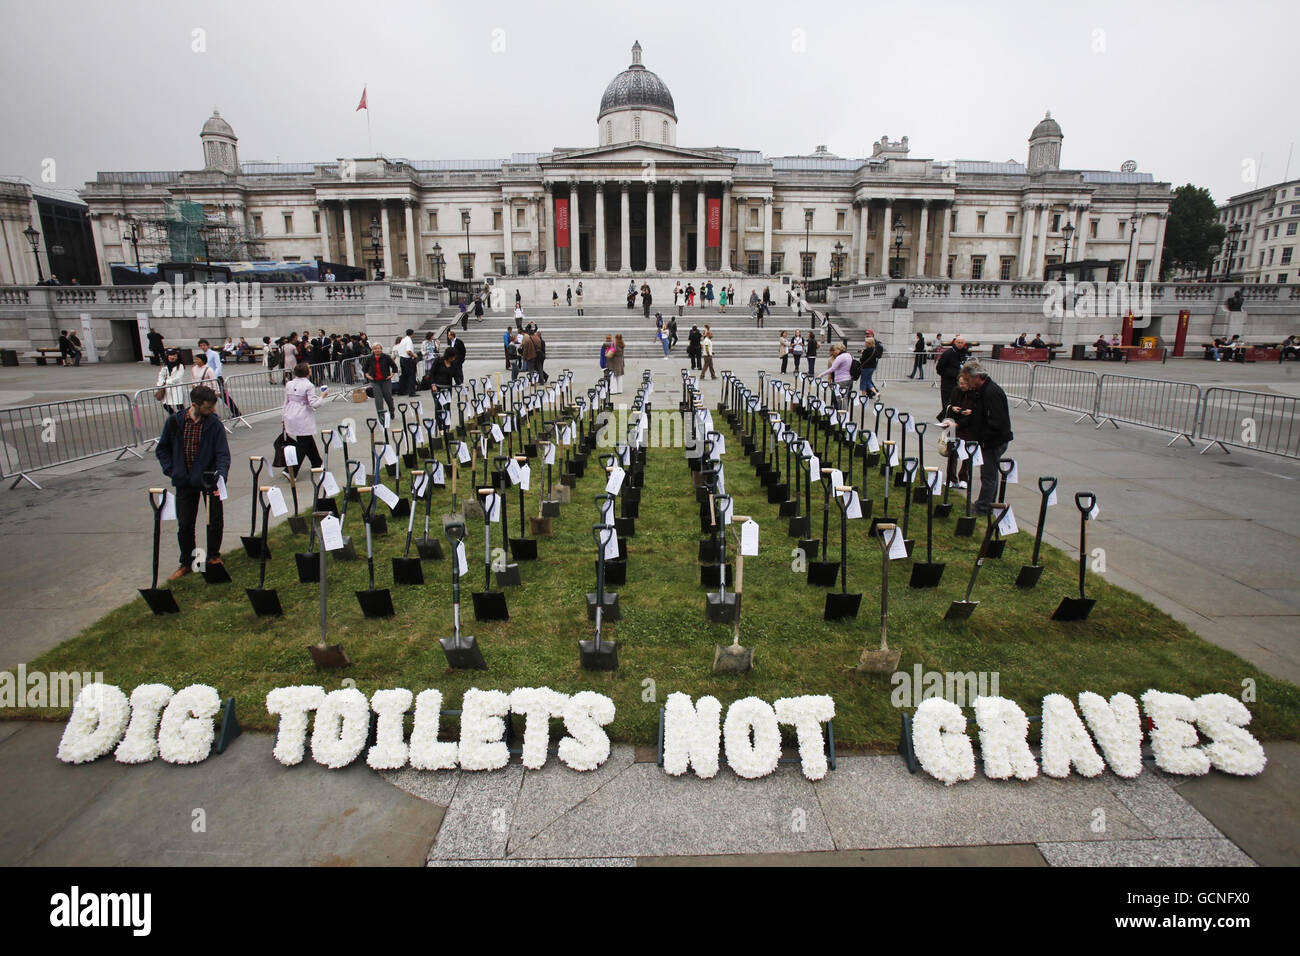 Un'installazione di 167 spade che simboleggiano il numero di bambini che muoiono di diarrea nel mondo in via di sviluppo ogni ora, che è stato eretto per la campagna di WaterAid's Dig Toilets Not Graves a Trafalgar Square, Londra. Foto Stock